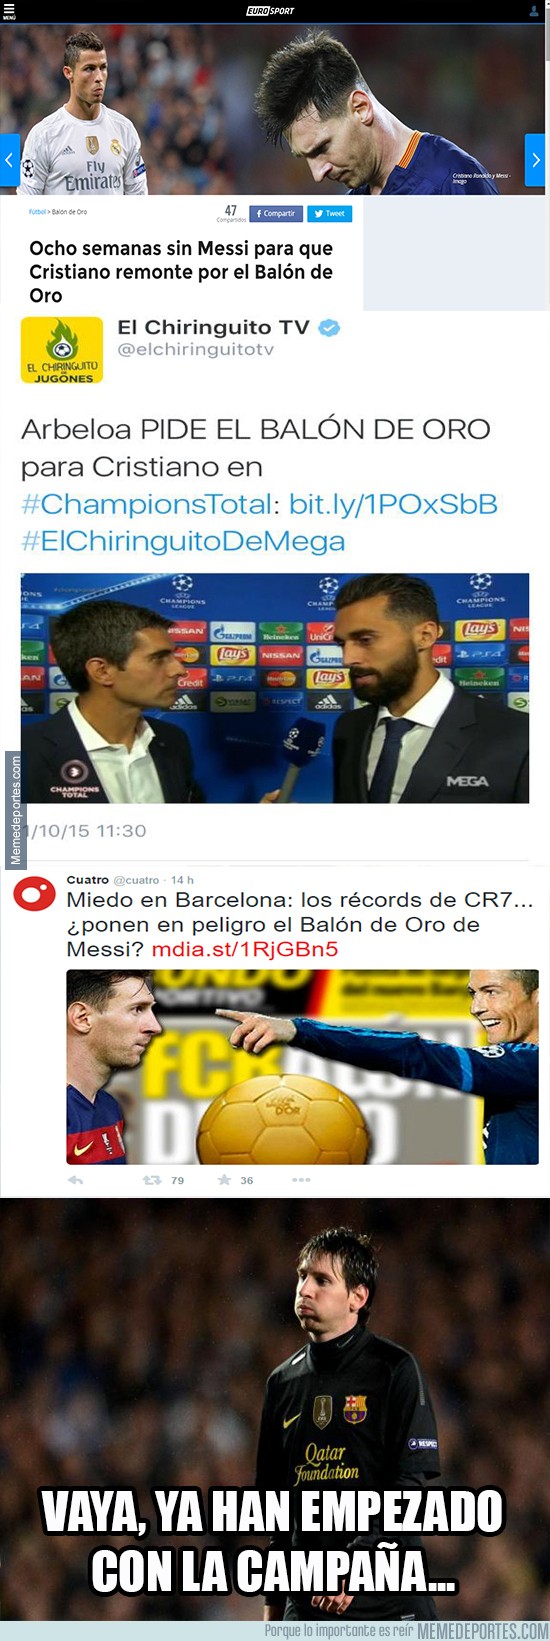 702138 - ¿De verdad alguien cree que el balón de oro no se lo llevará Messi?